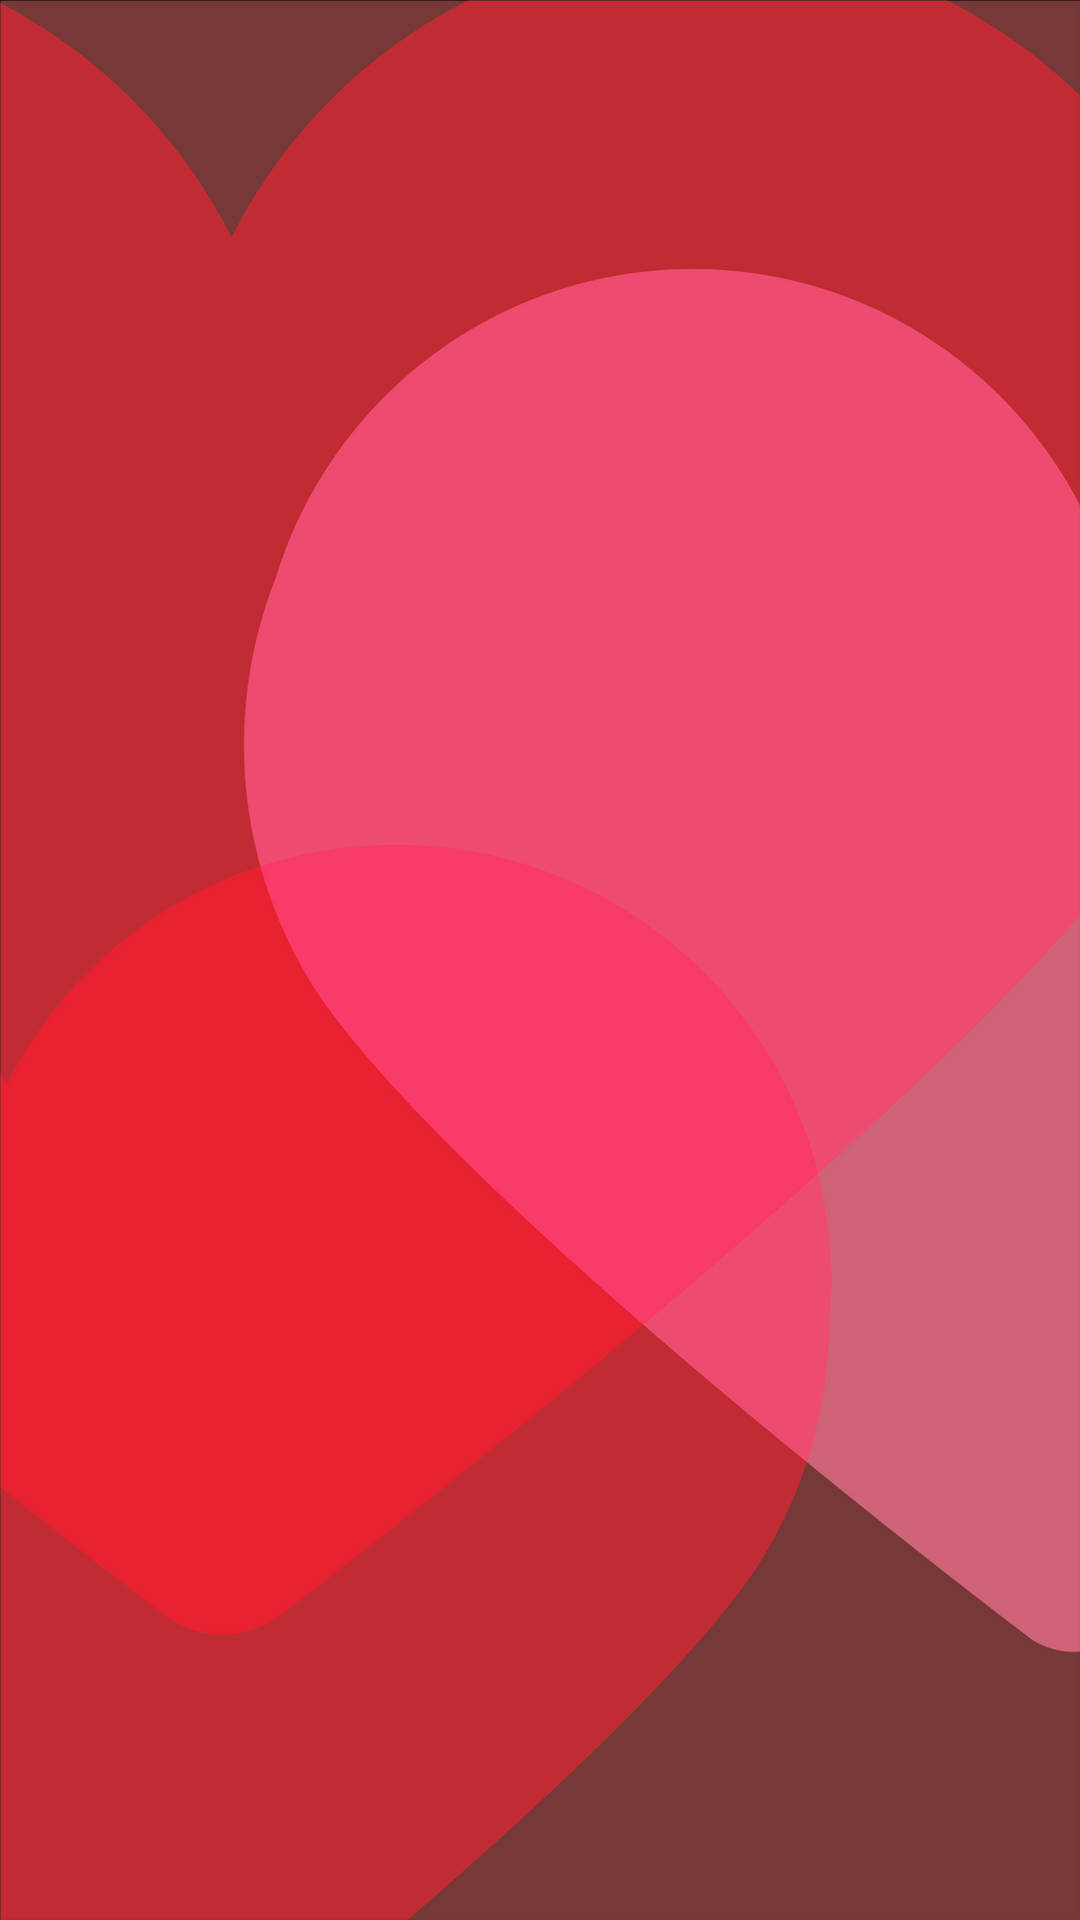 Matching Left Pink Heart Wallpaper